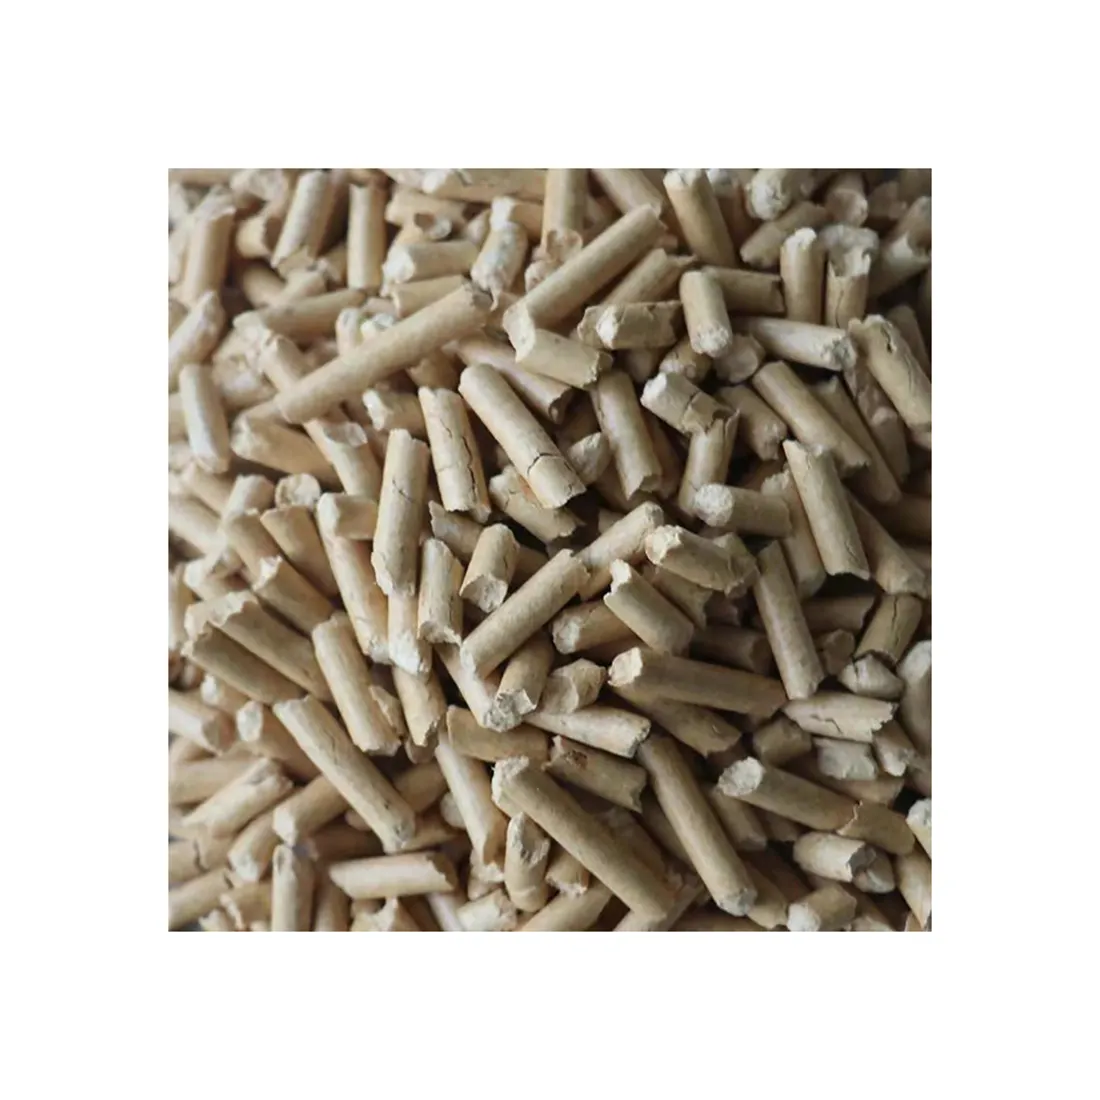 China Werksverarbeitung Qualitätsumwelt schutz Heizung Großhandel Biomasse Pellets Brennstoff kein Koks Holzpellets